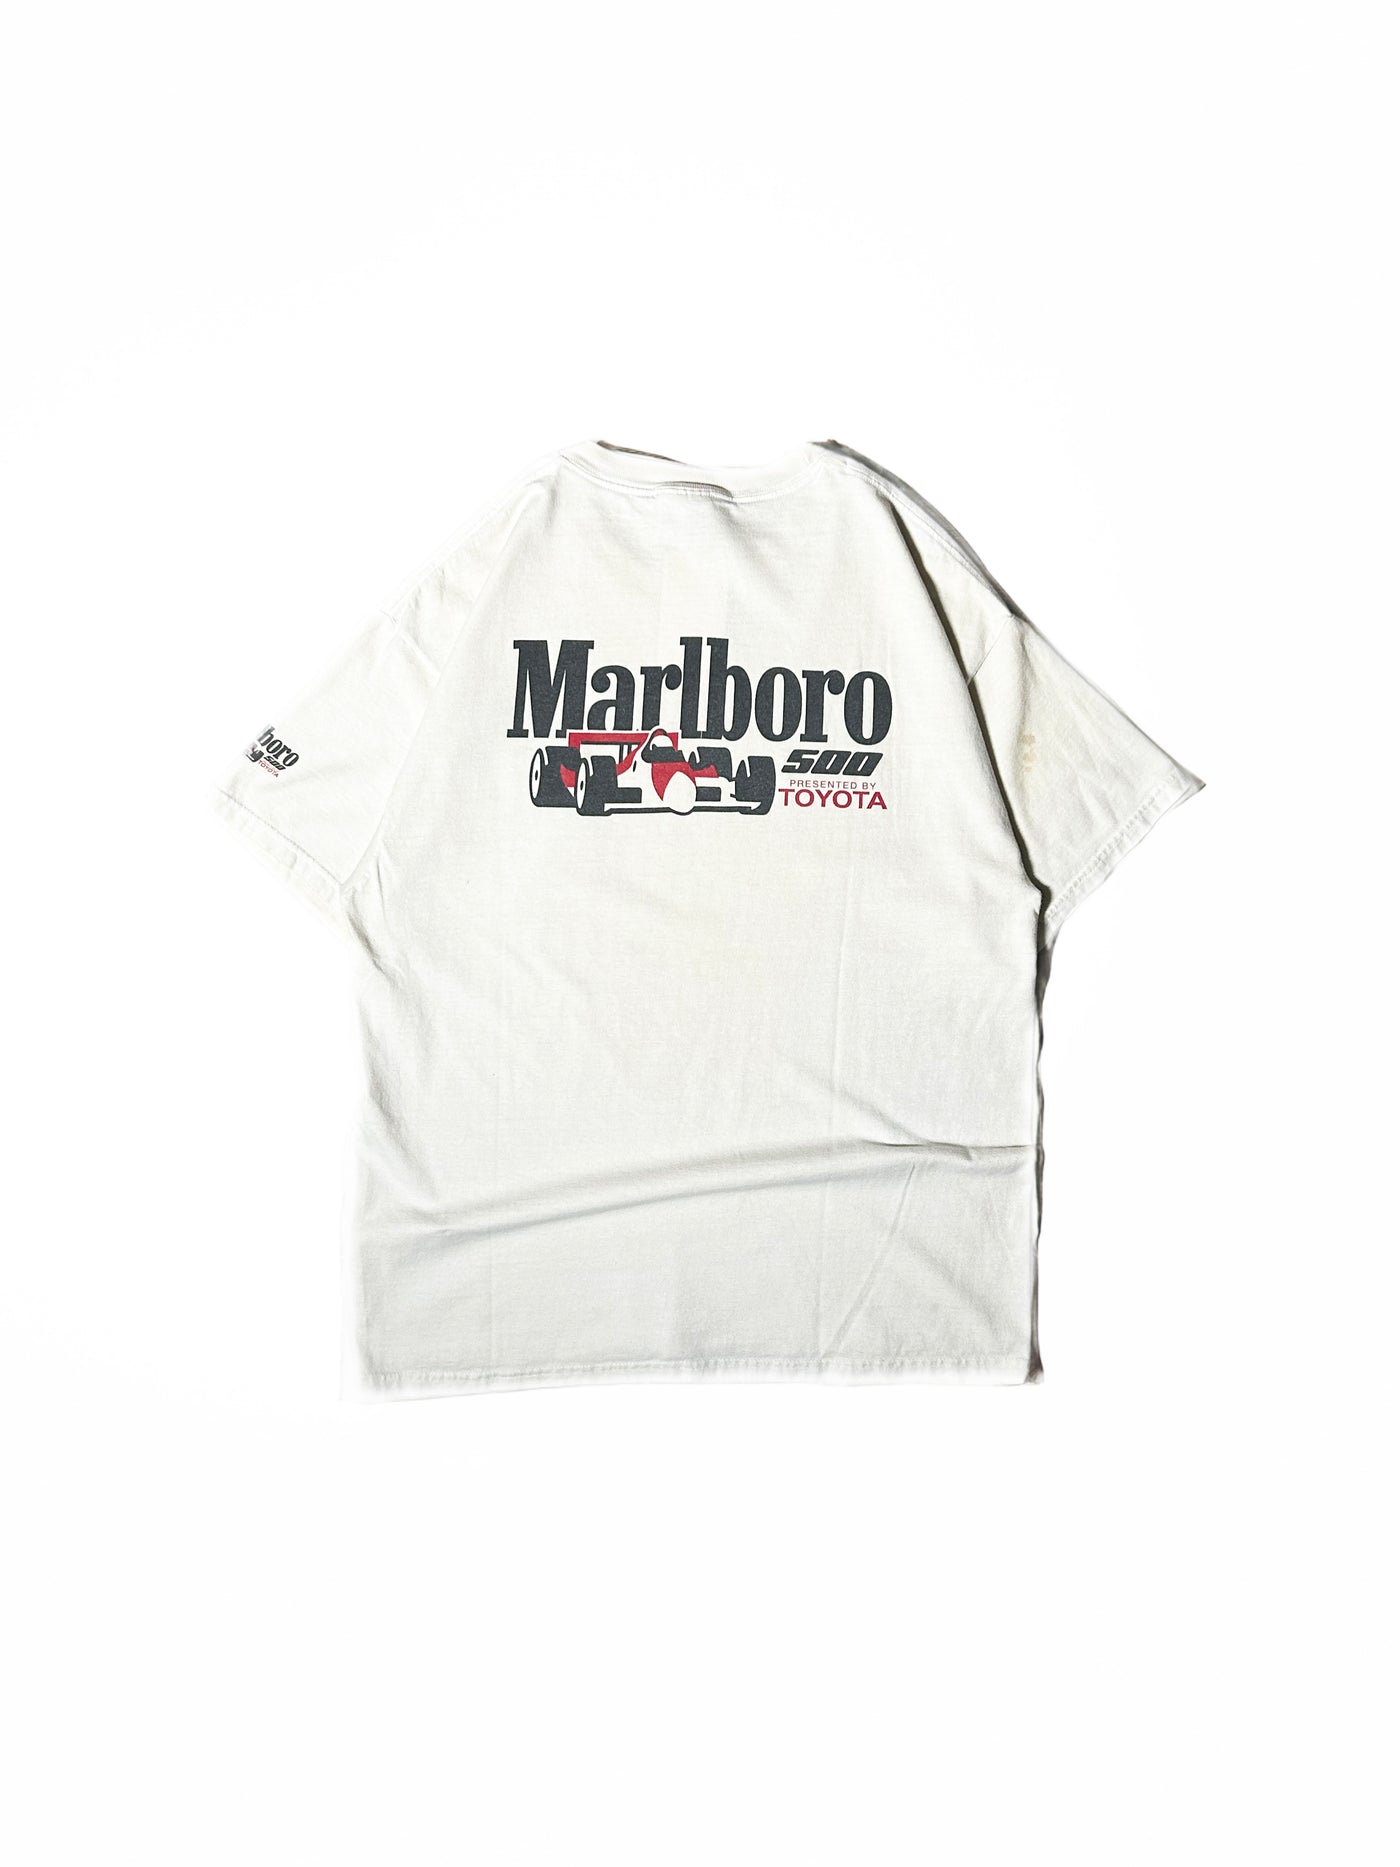 Vintage 90s Marlboro Toyota 500 Pocket T-Shirt